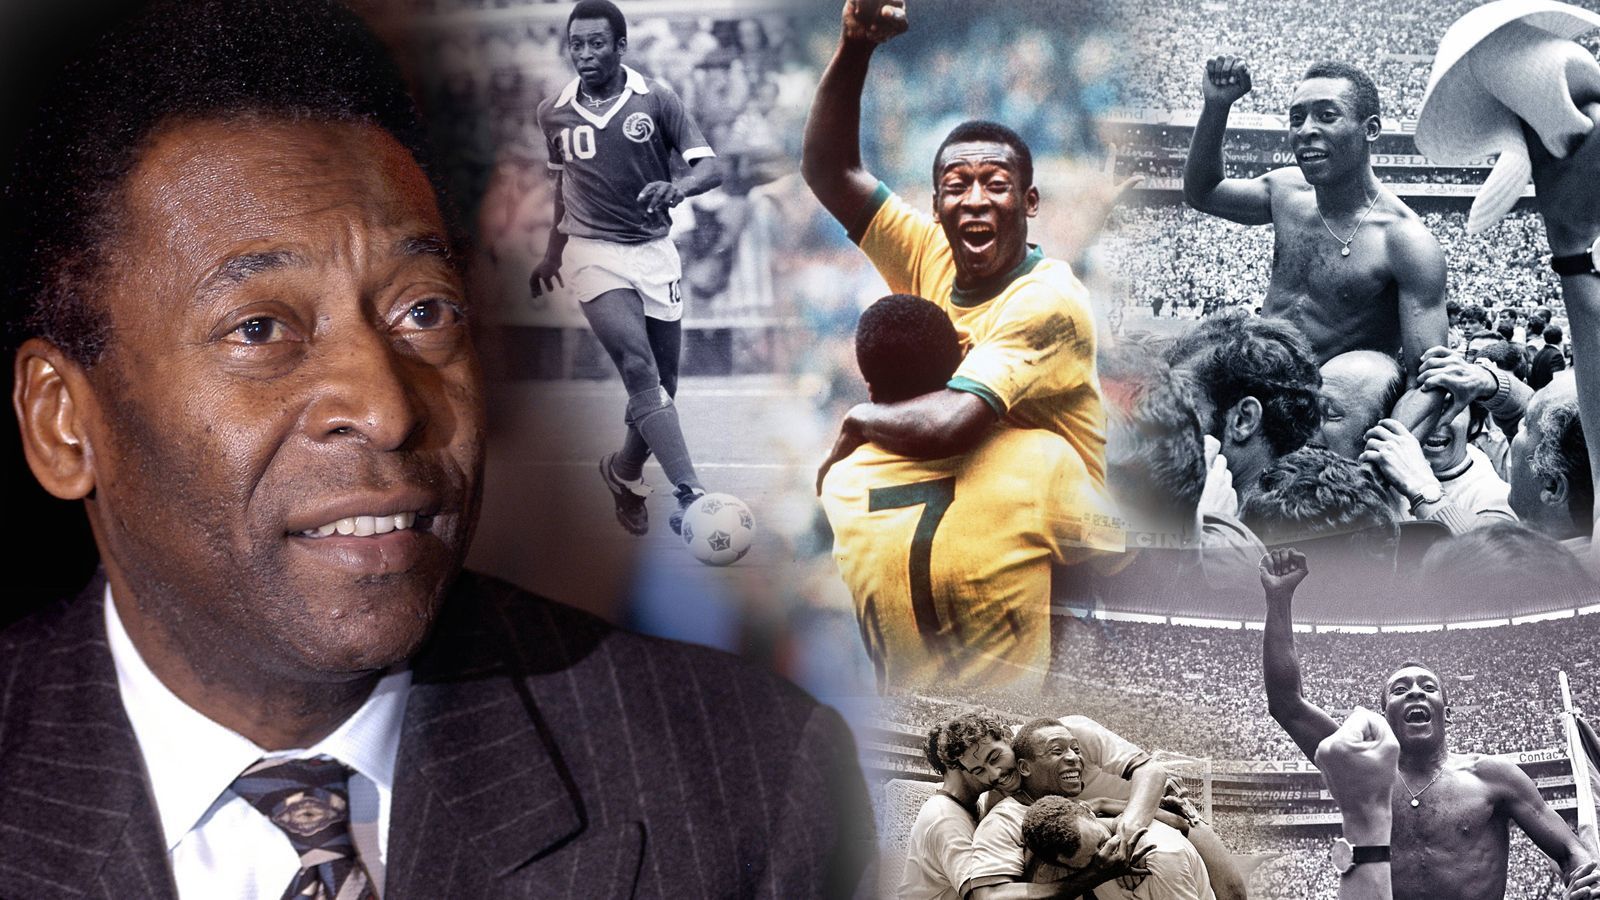 
                <strong>Pele: Die Karriere des "Königs des Fußballs"</strong><br>
                Er war der "König des Fußballs", der Star unter den Stars. Seinen Namen kennt der 5-Jährige und der 100-Jährige - Edson Arantes do Nascimento war der bürgerliche Name, aber jeder kannte ihn unter Pele. Am Donnerstag verlor die Fußball-Legende den Kampf gegen den Krebs. Er wurde 82 Jahre alt. ran blickt auf die Karriere des Königs des Fußballs zurück.
              